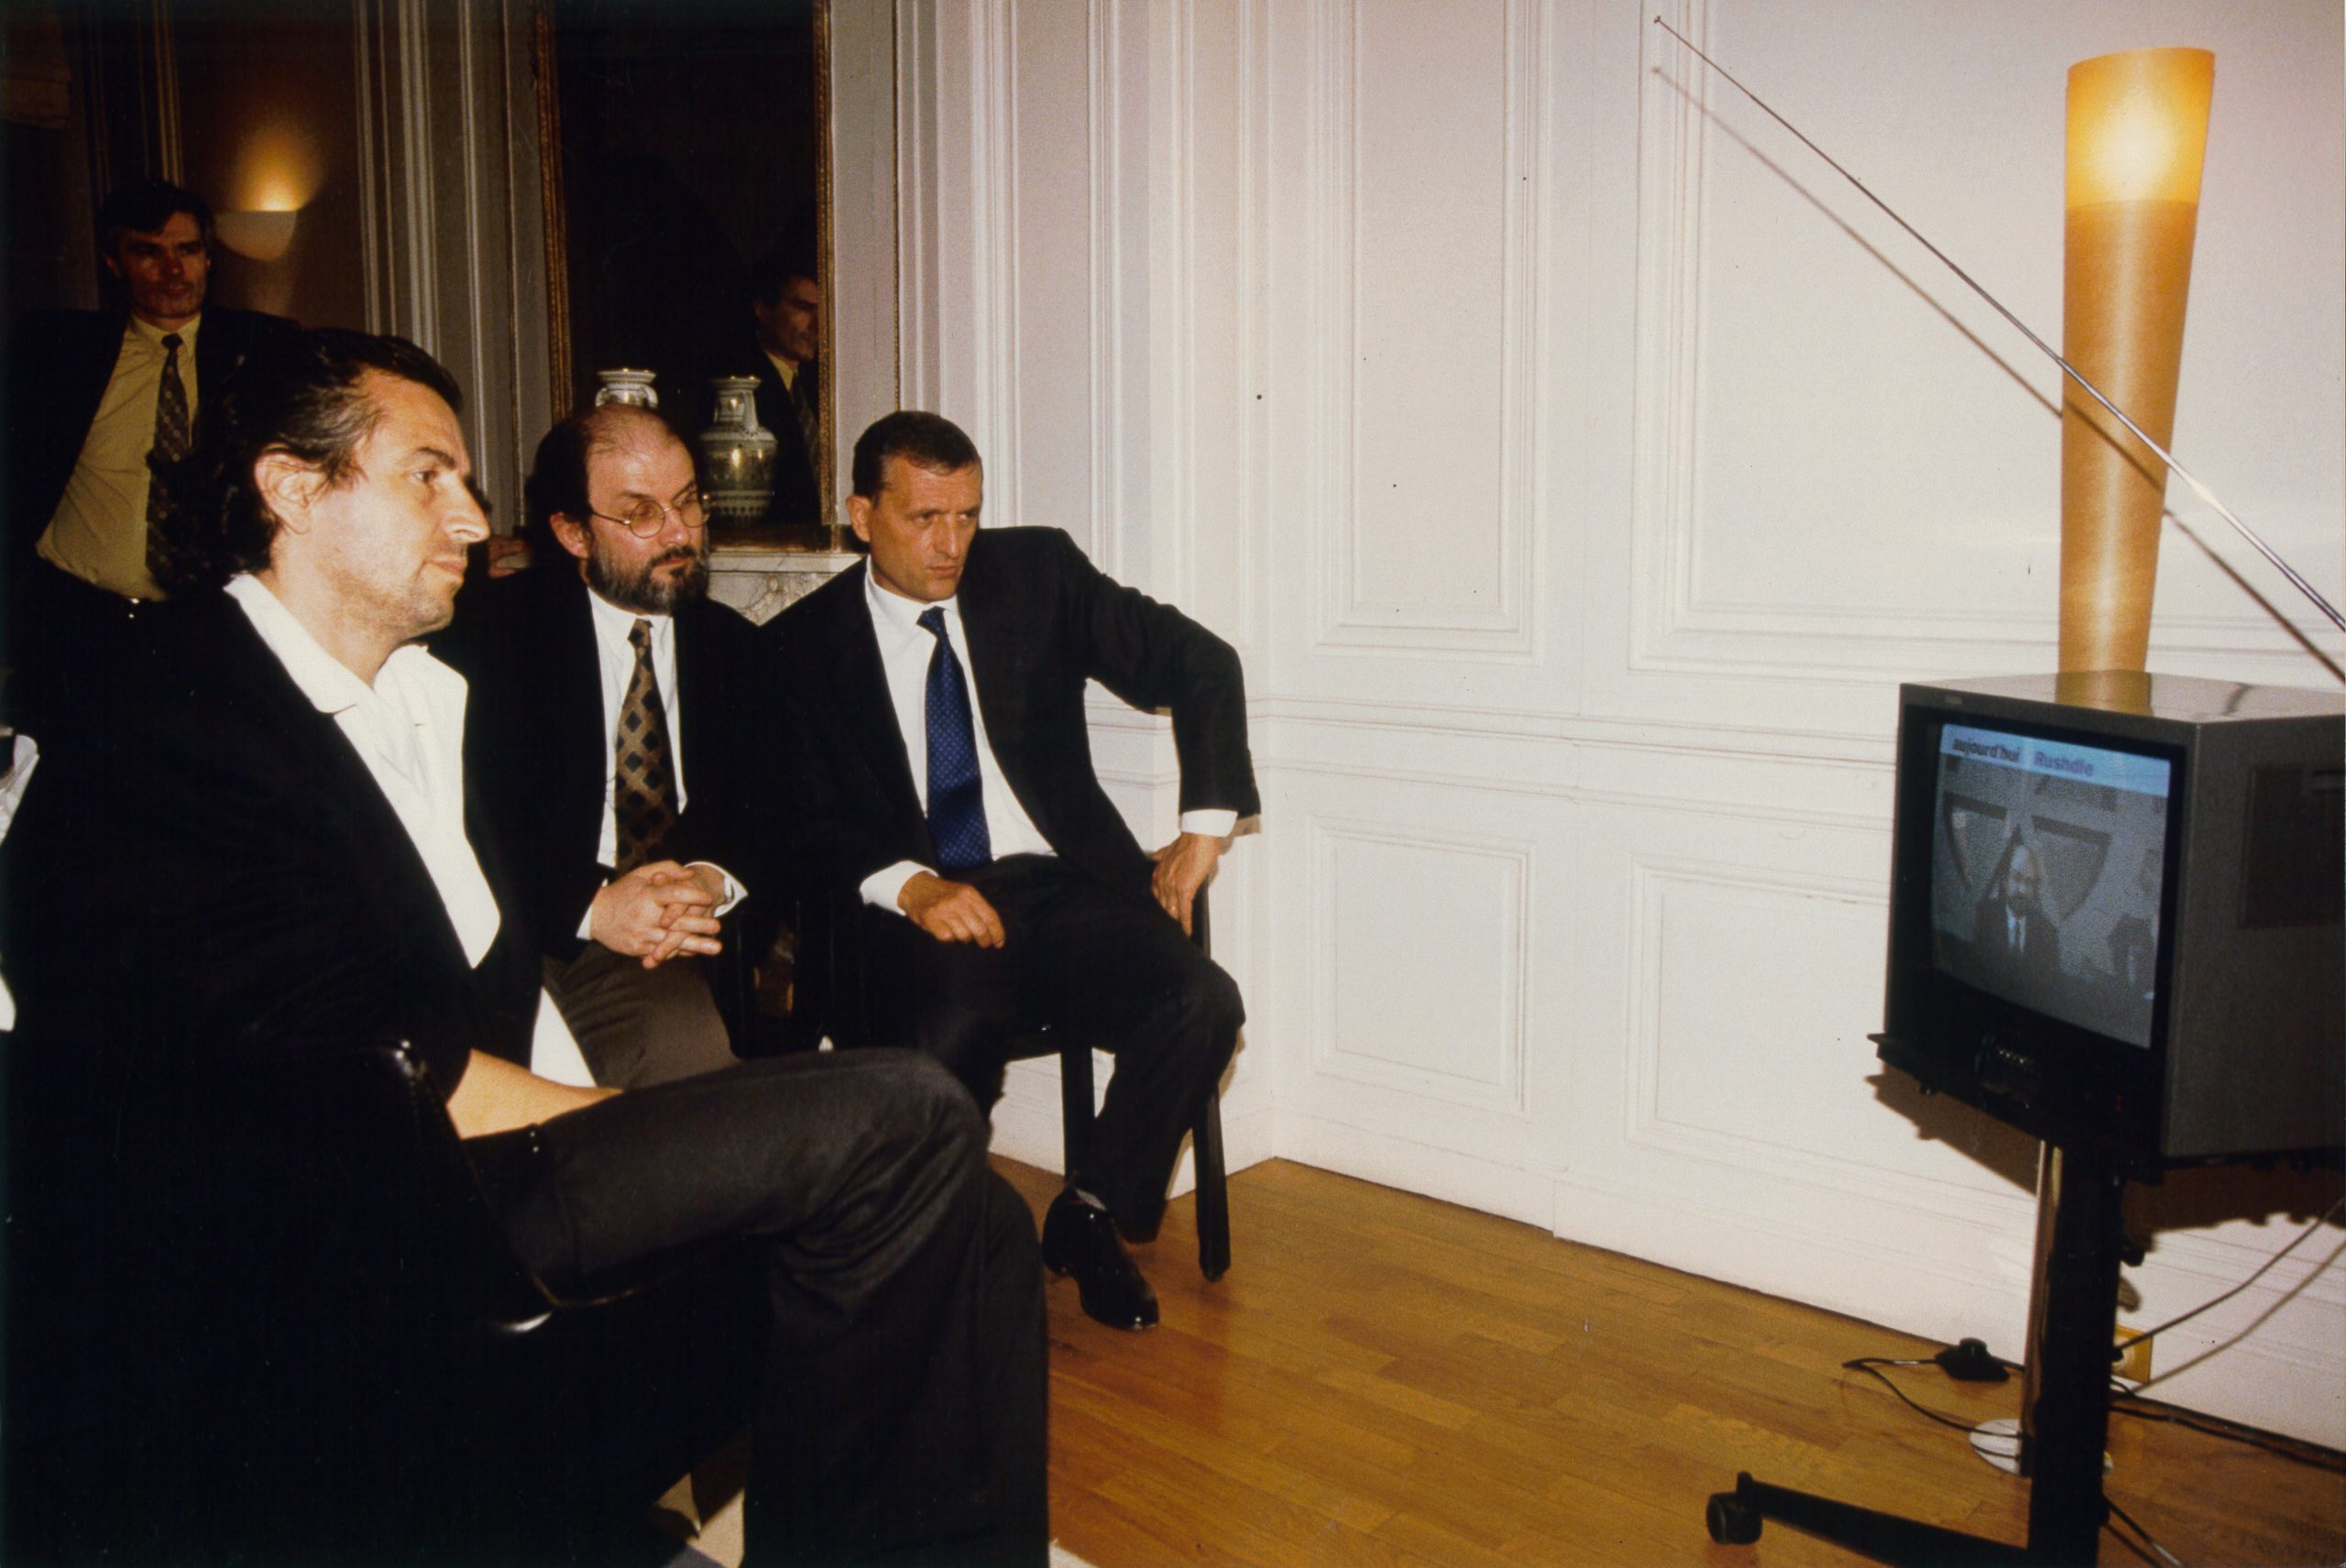 Bernard-Henri Lévy et Salman Rushdie assis devant un poste de télévision qui diffuse des images de Salman Rushdie.